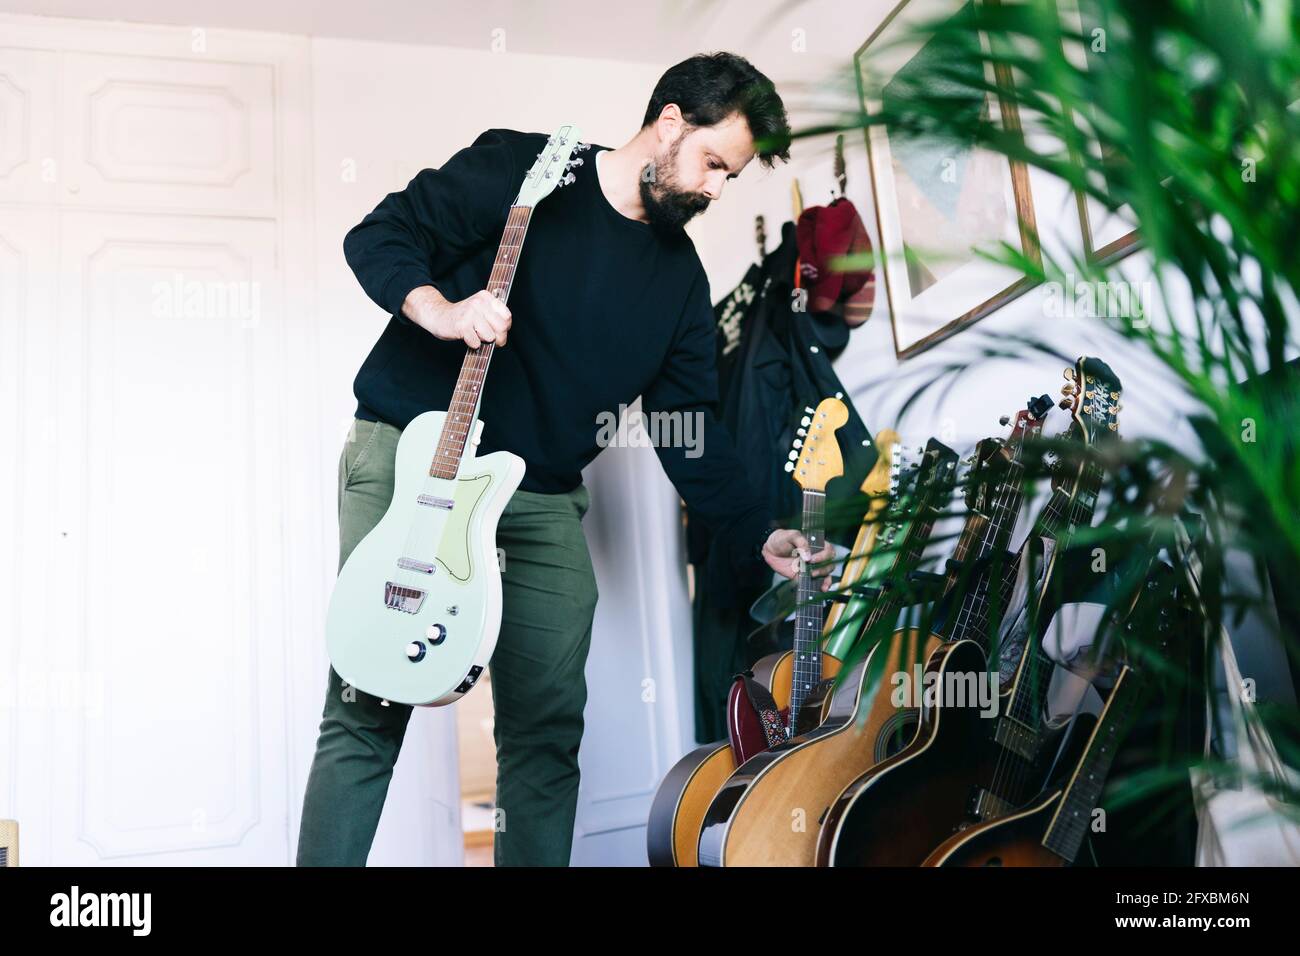 Man selecting guitars in studio Stock Photo